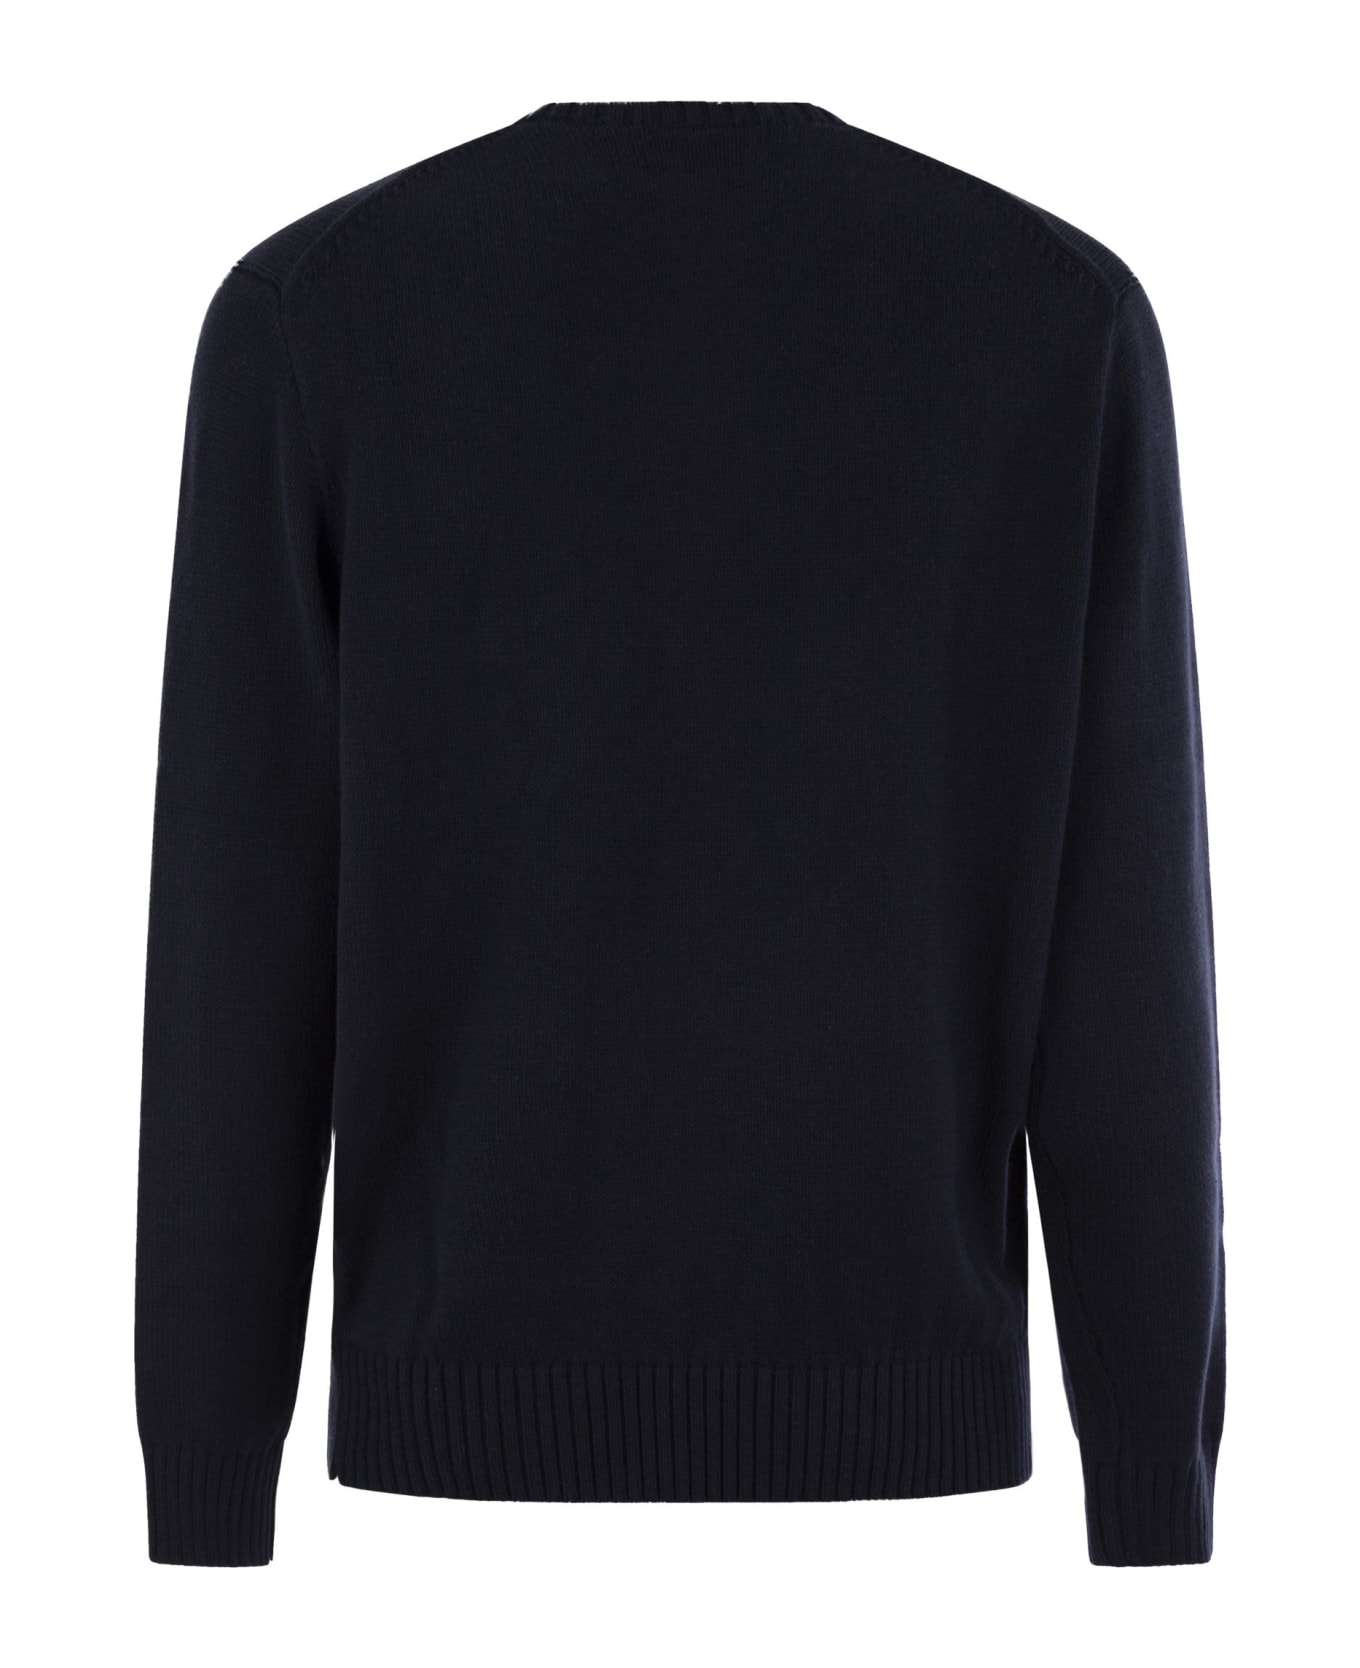 Polo Ralph Lauren Polo Bear Sweater - Navy Blue ニットウェア